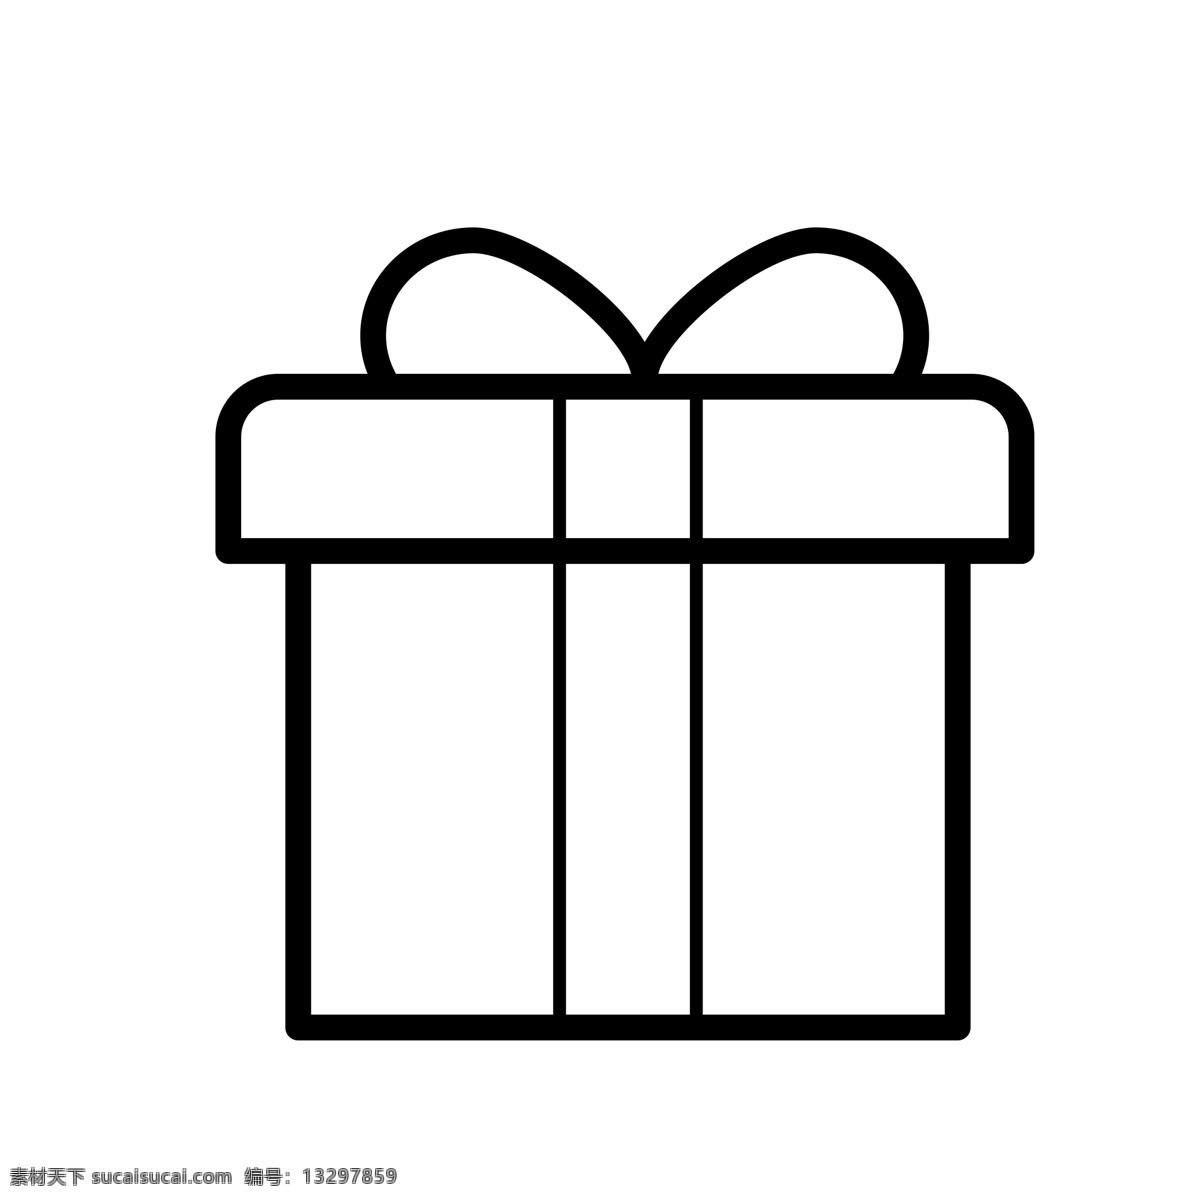 扁平化礼物箱 礼物 礼物盒 扁平化ui ui图标 手机图标 界面ui 网页ui h5图标